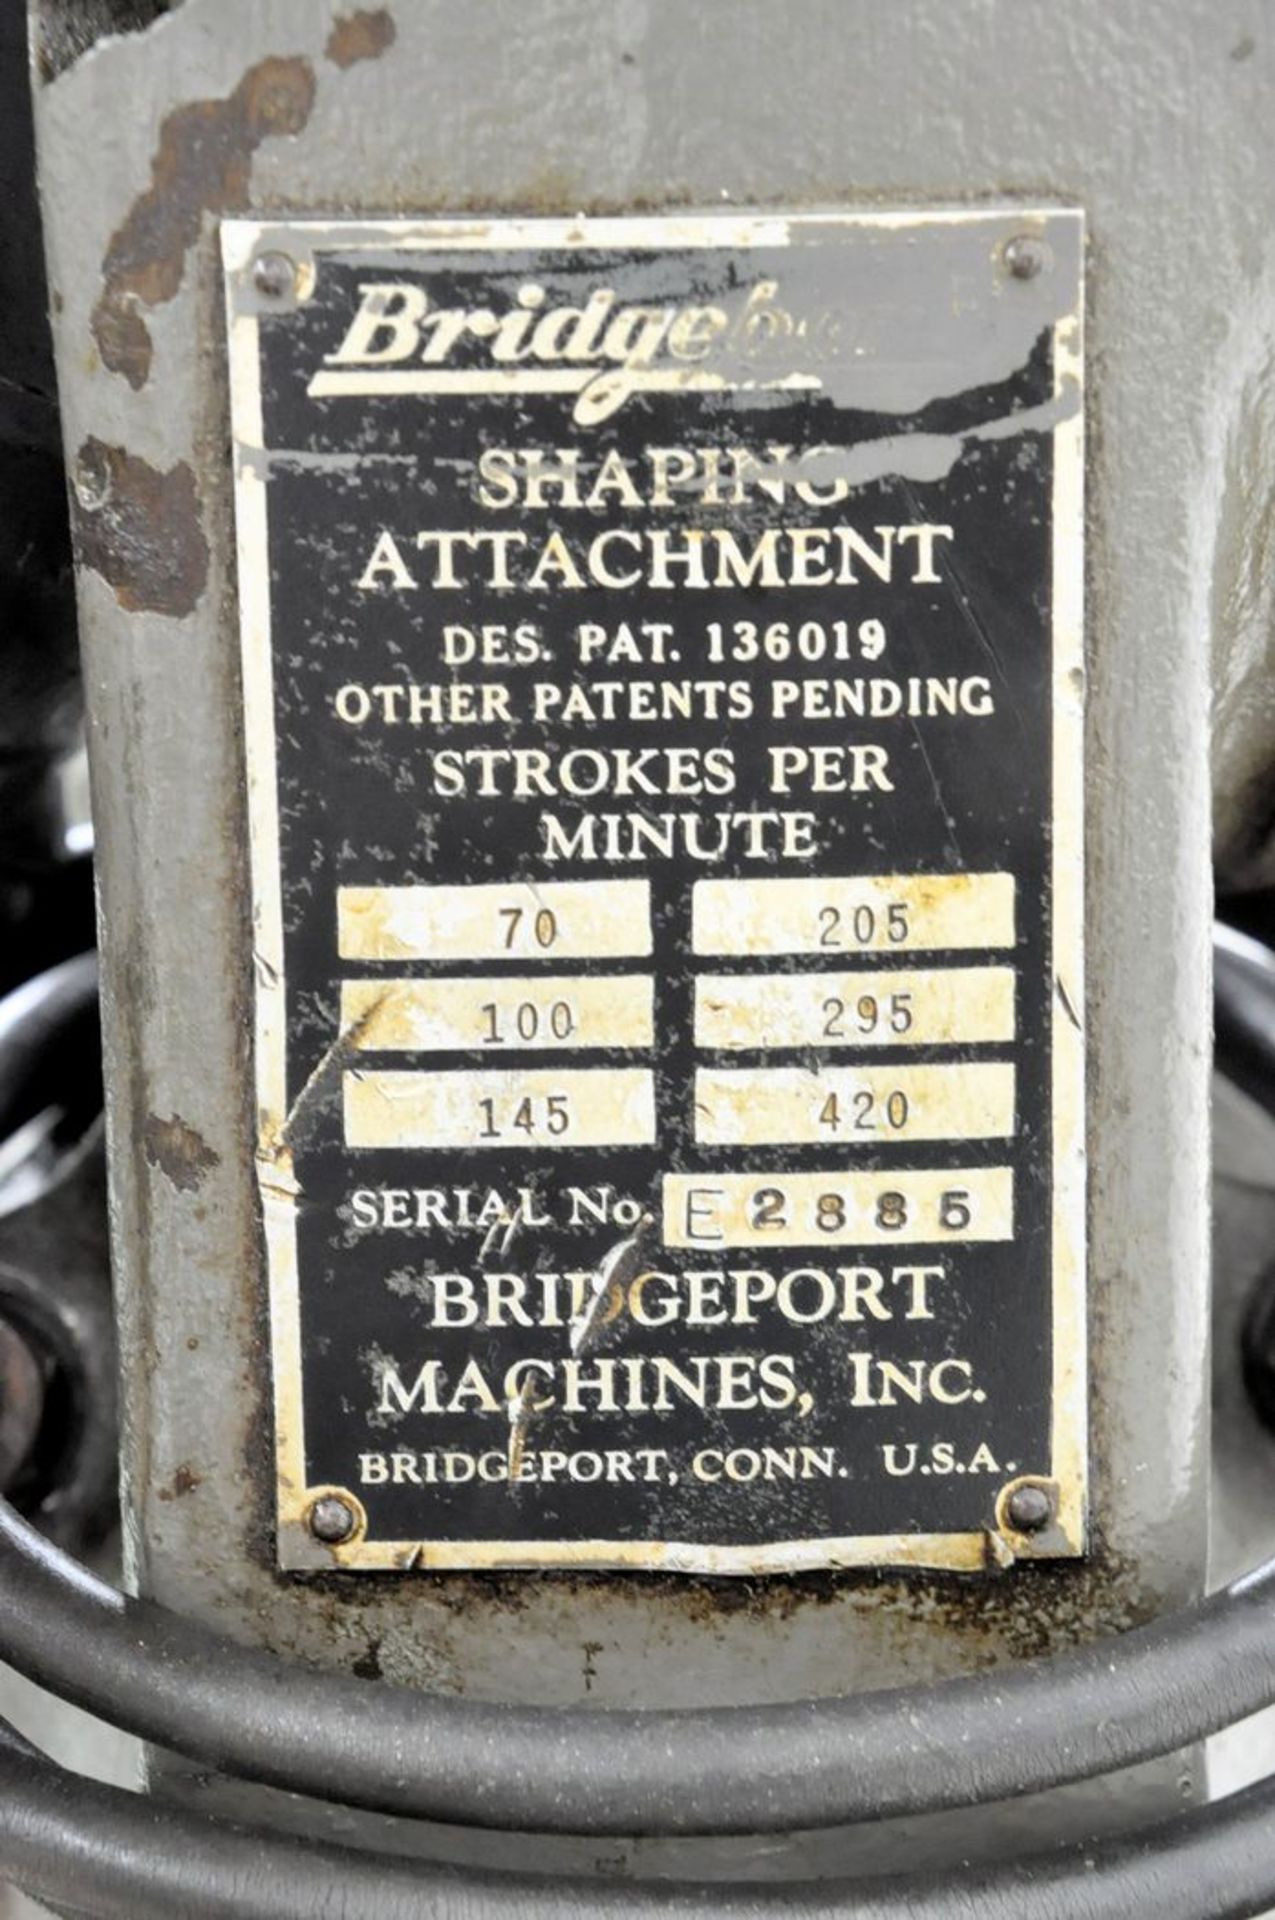 Bridgeport Shaper Attachment, S/N E2885, 70-420 Strokes Per Minute - Image 3 of 3